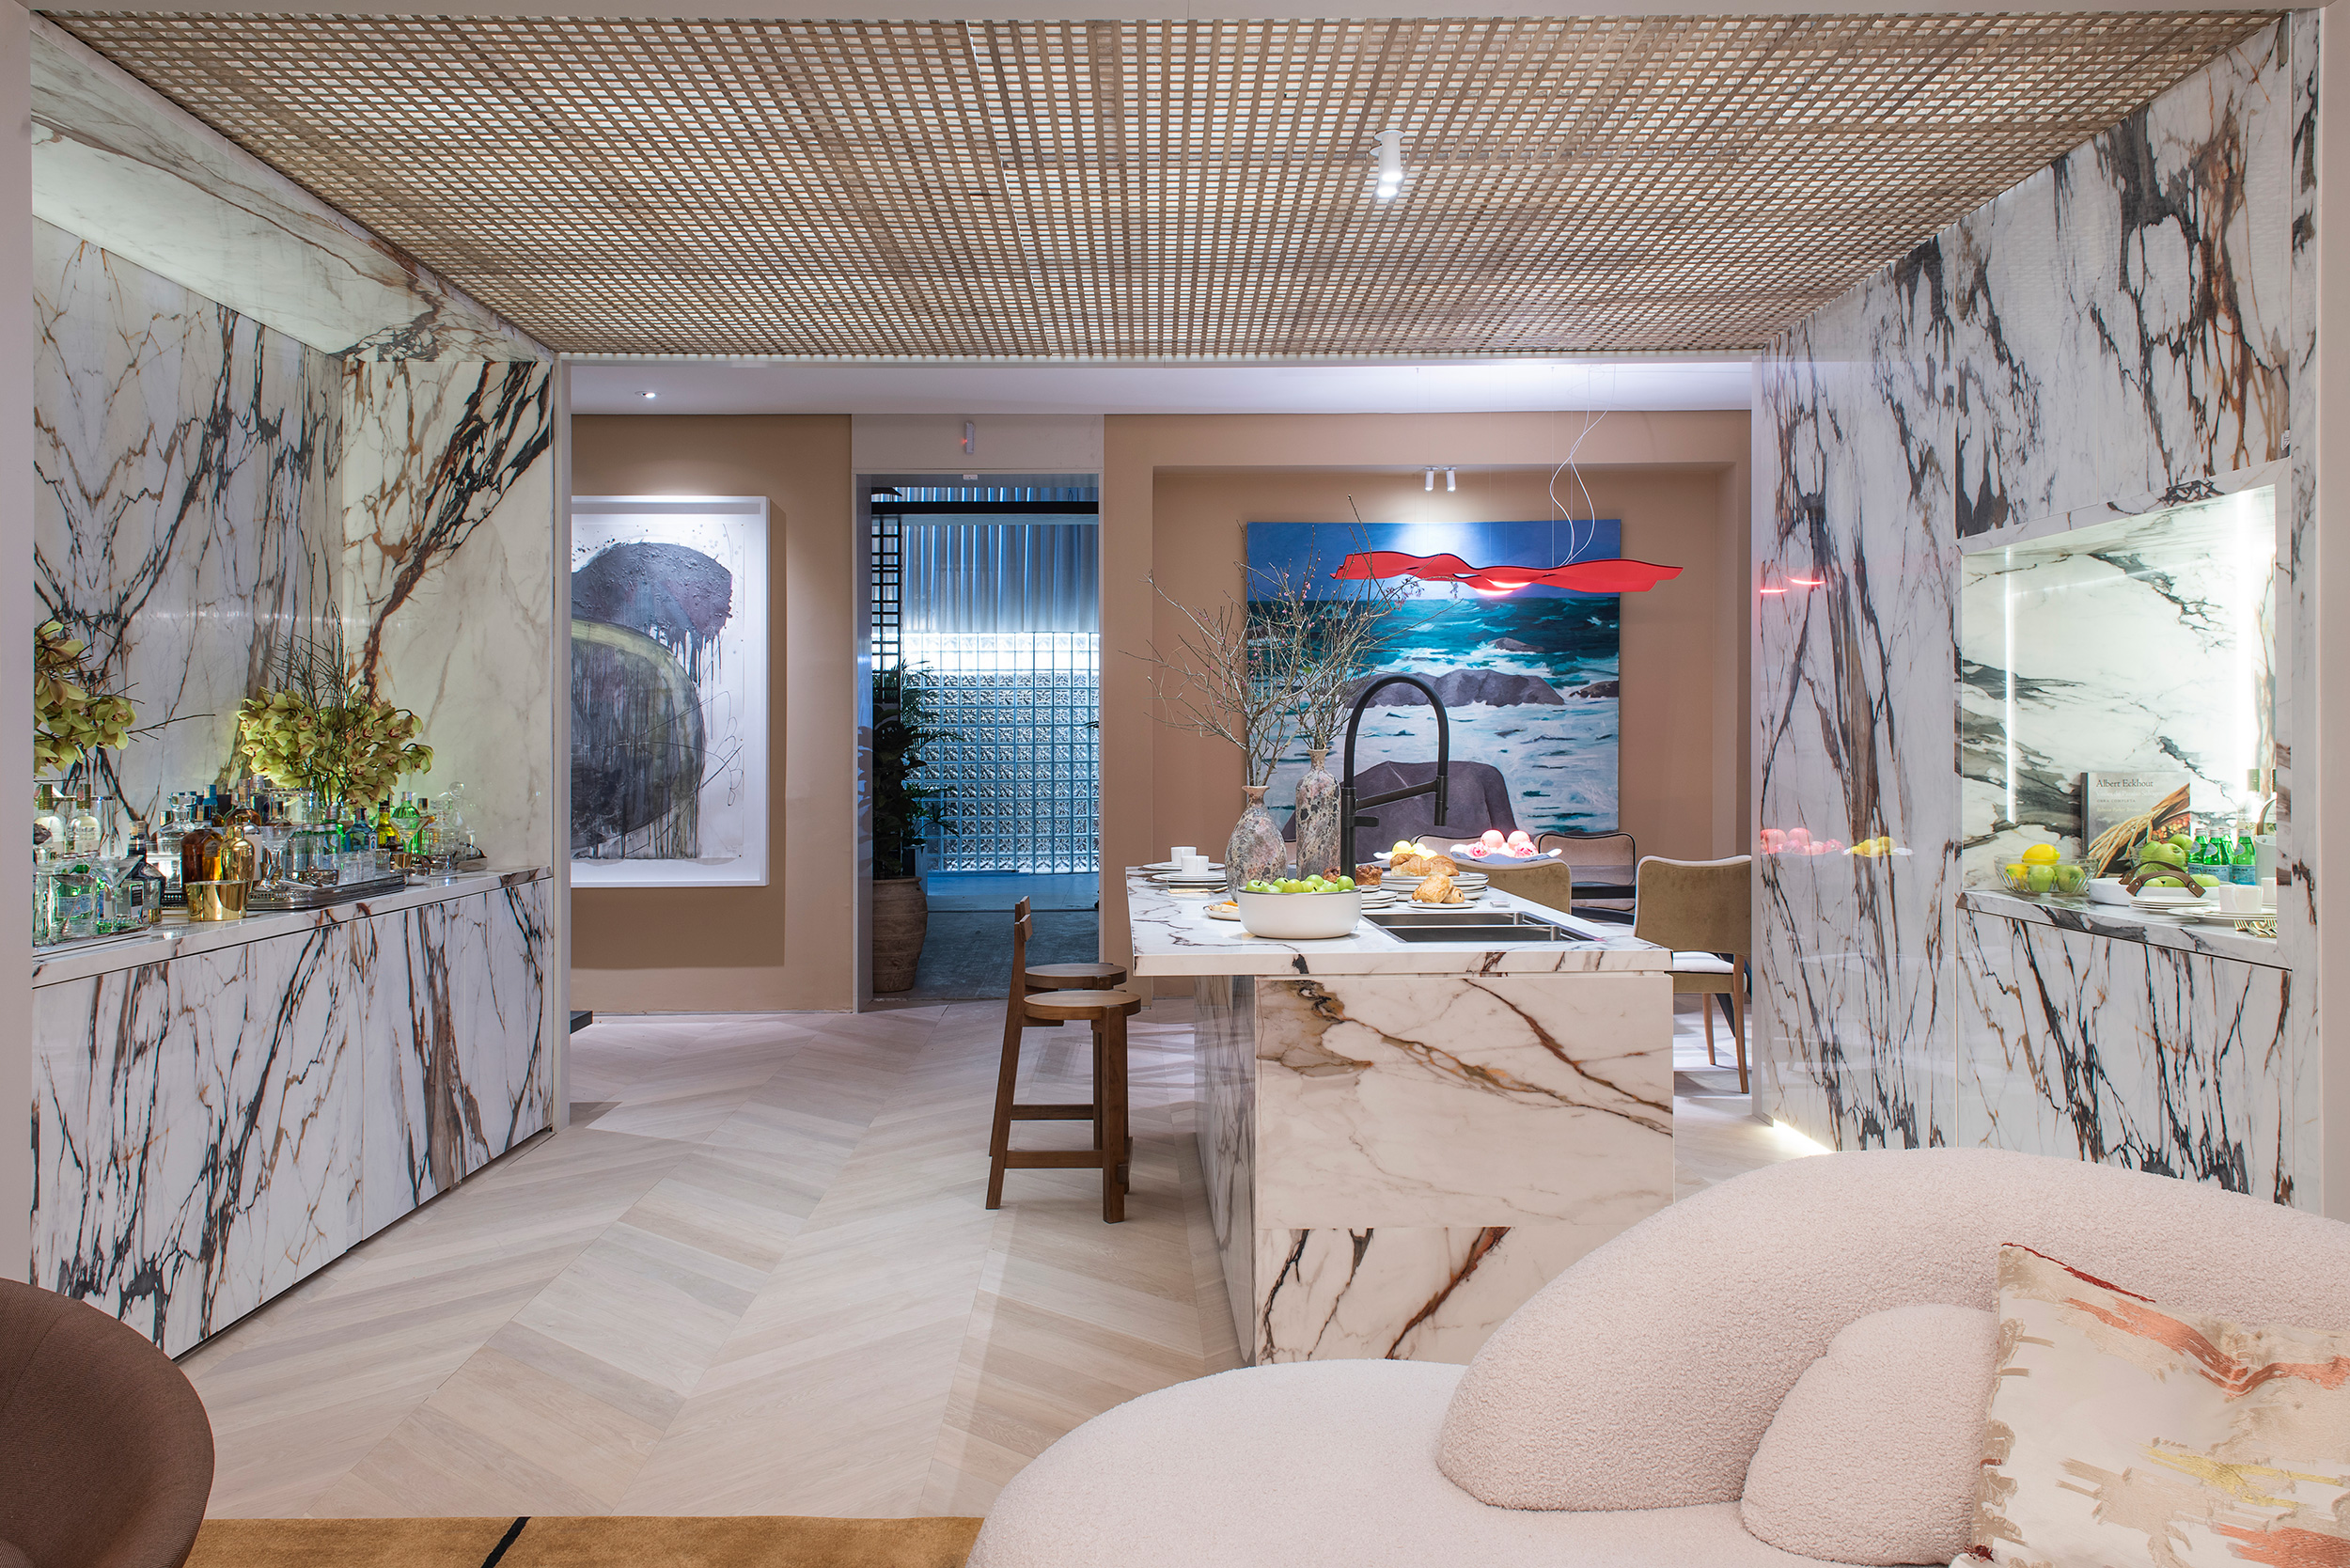 murilo lomas arquitetura living art casacor sp 2022 decoracao design mostras cozinha quadro marmore bancada